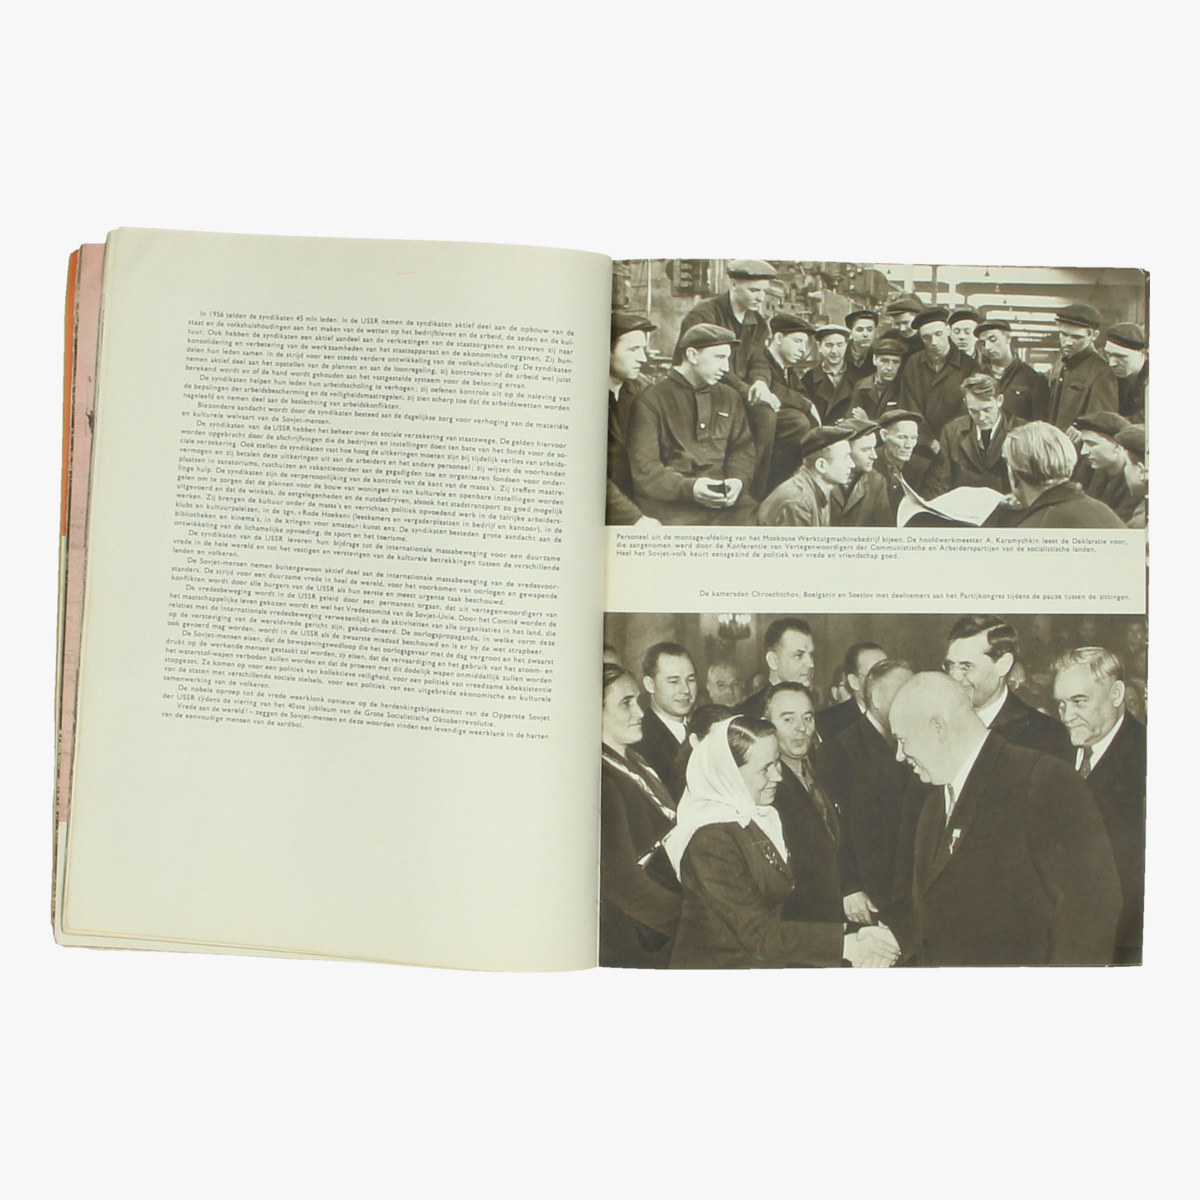 Afbeeldingen van boek ussr expo 58 de sectie der ussr op de wereldtetoonstelling 1958 te bxl